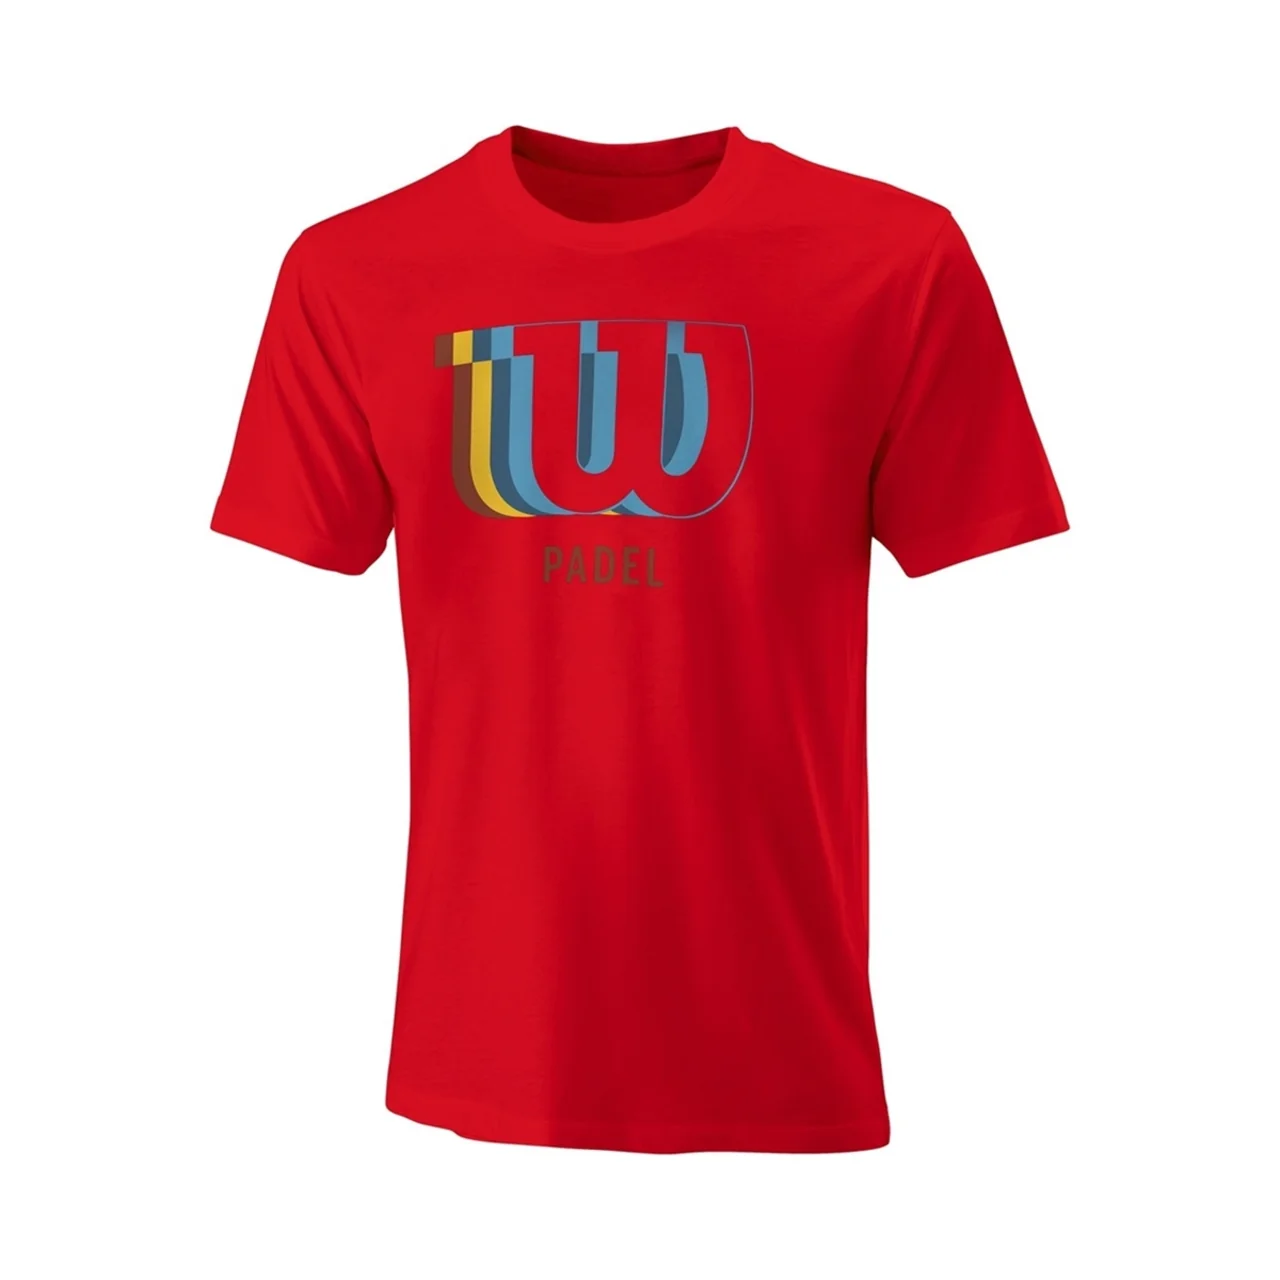 Wilson Mens Padel Blur Tech T-shirt Red